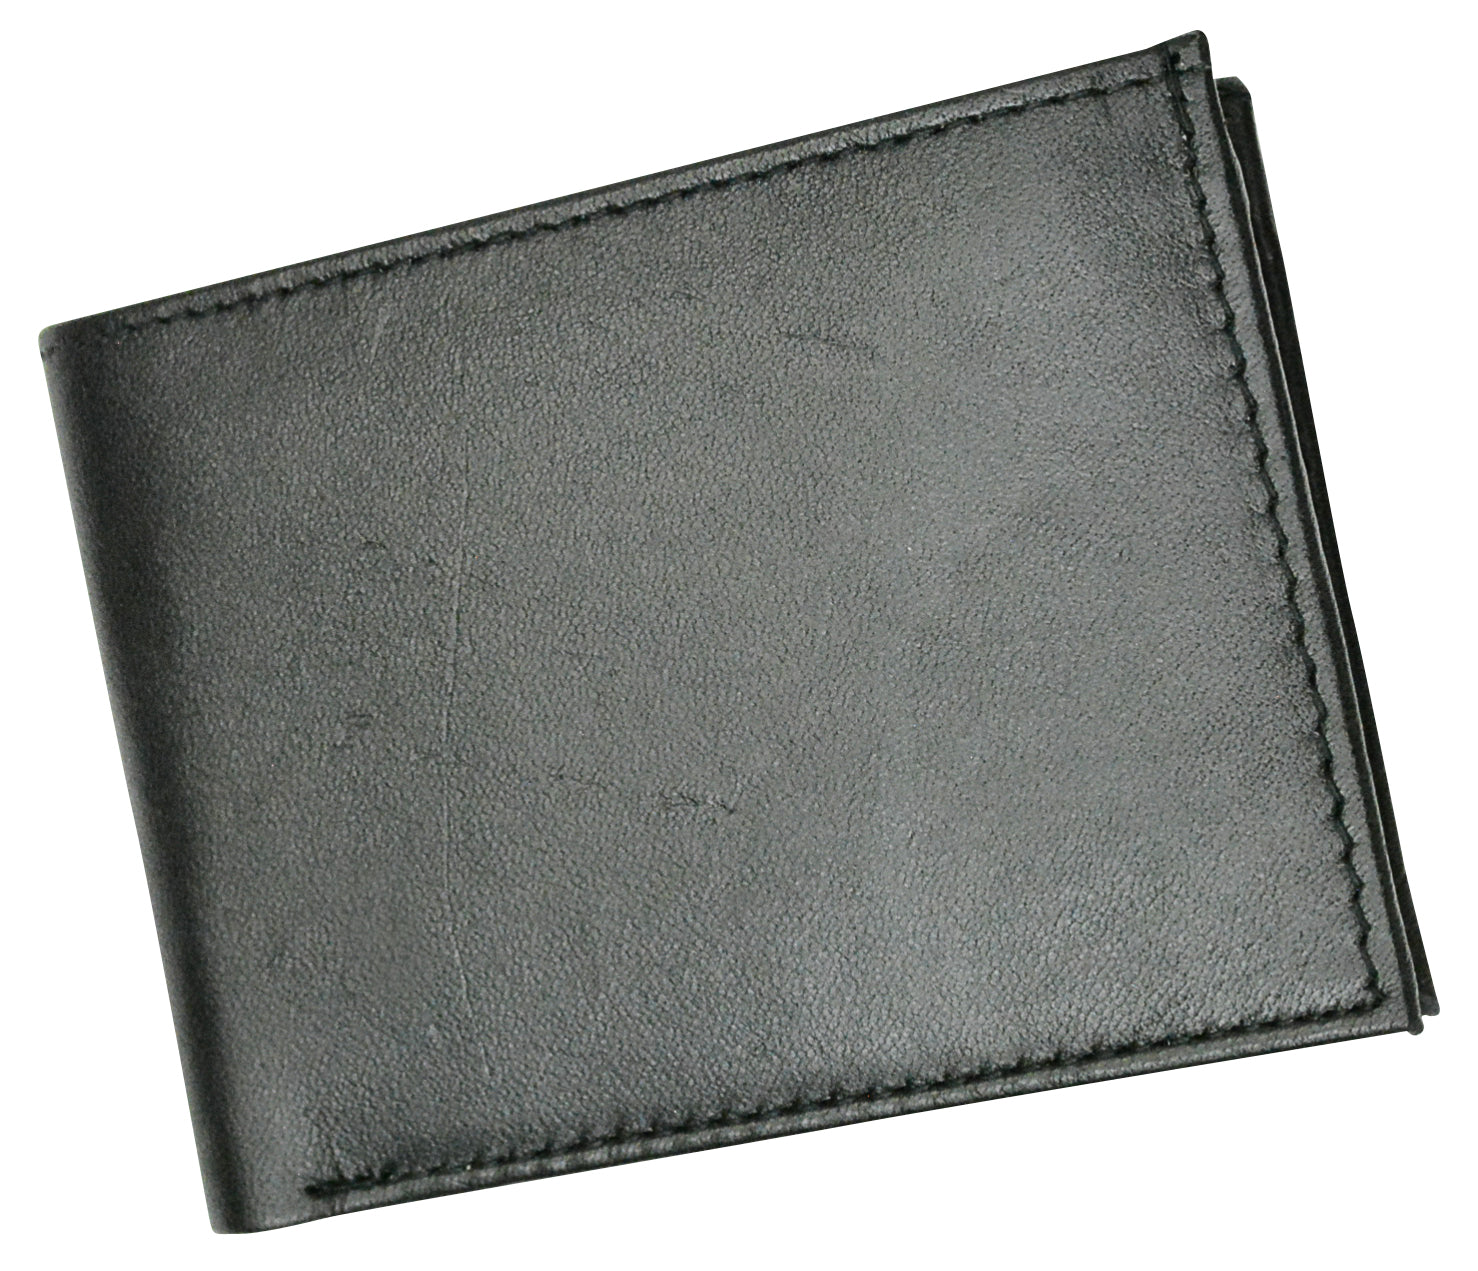 Leather Wallets for Men, Slim